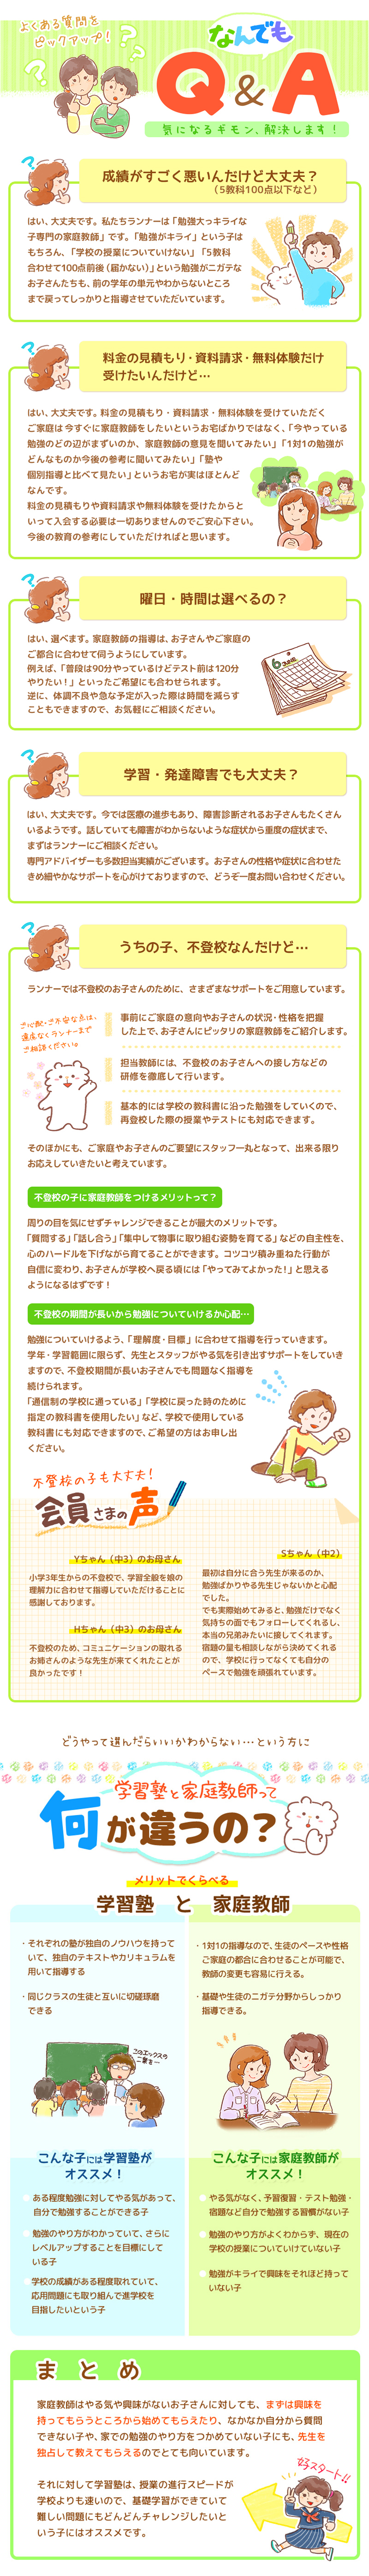 【家庭教師-熊本県-山鹿市のお客様のページ】【画像が表示されない場合はページ下部に画像と同じ内容をテキストで掲載していますのでそちらをご覧ください。】